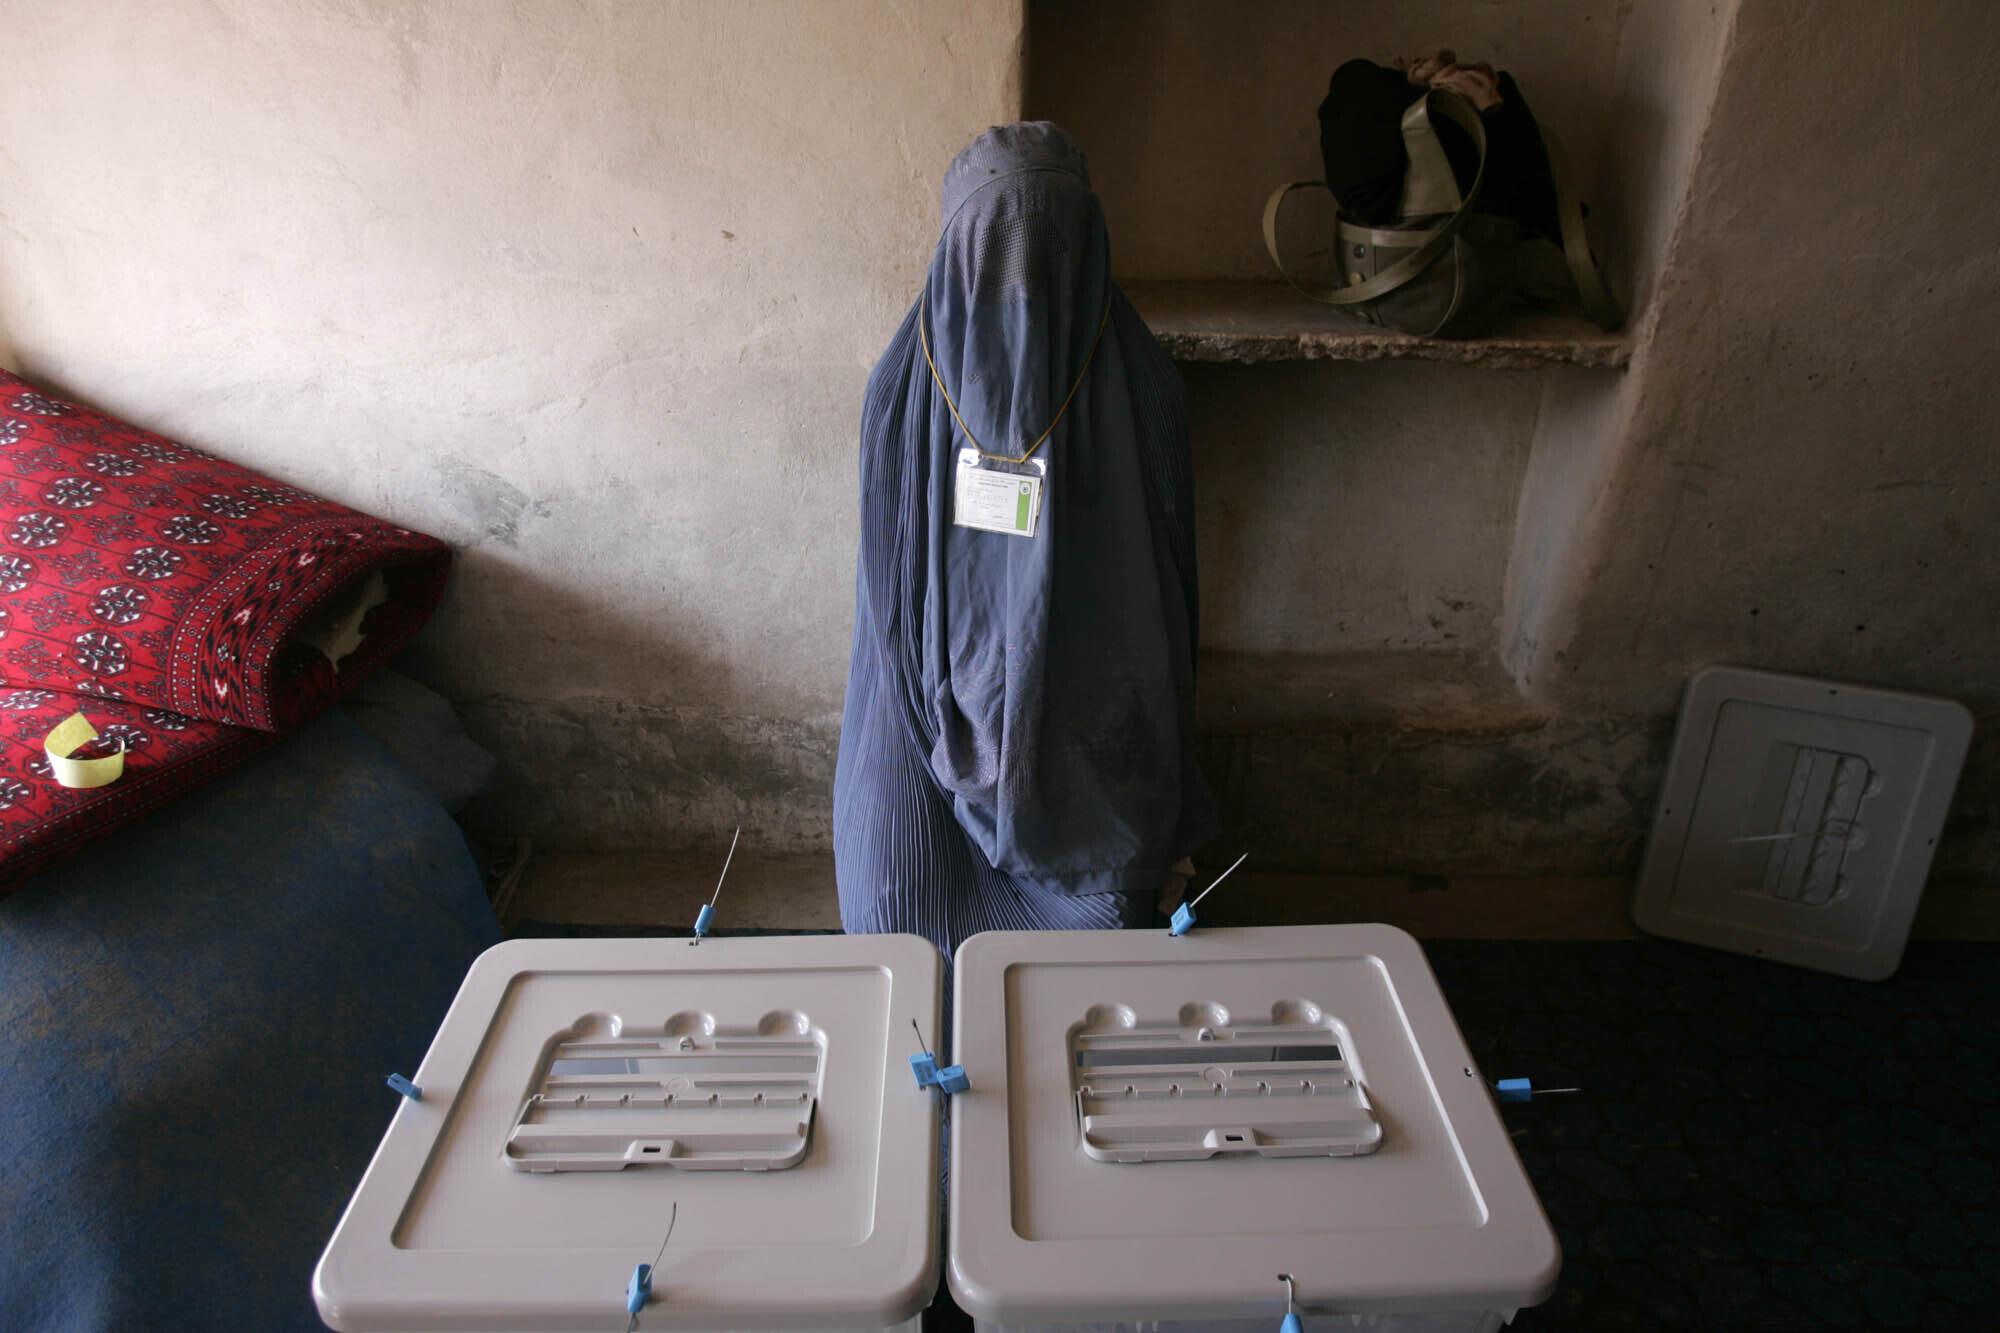 Una trabajadora electoral espera que los votantes lleguen a un colegio electoral en Kandahar, Afganistán, el 18 de septiembre de 2005. Afganistán celebró elecciones parlamentarias históricas, las primeras en tres décadas. (Foto AP / Saurabh Das)